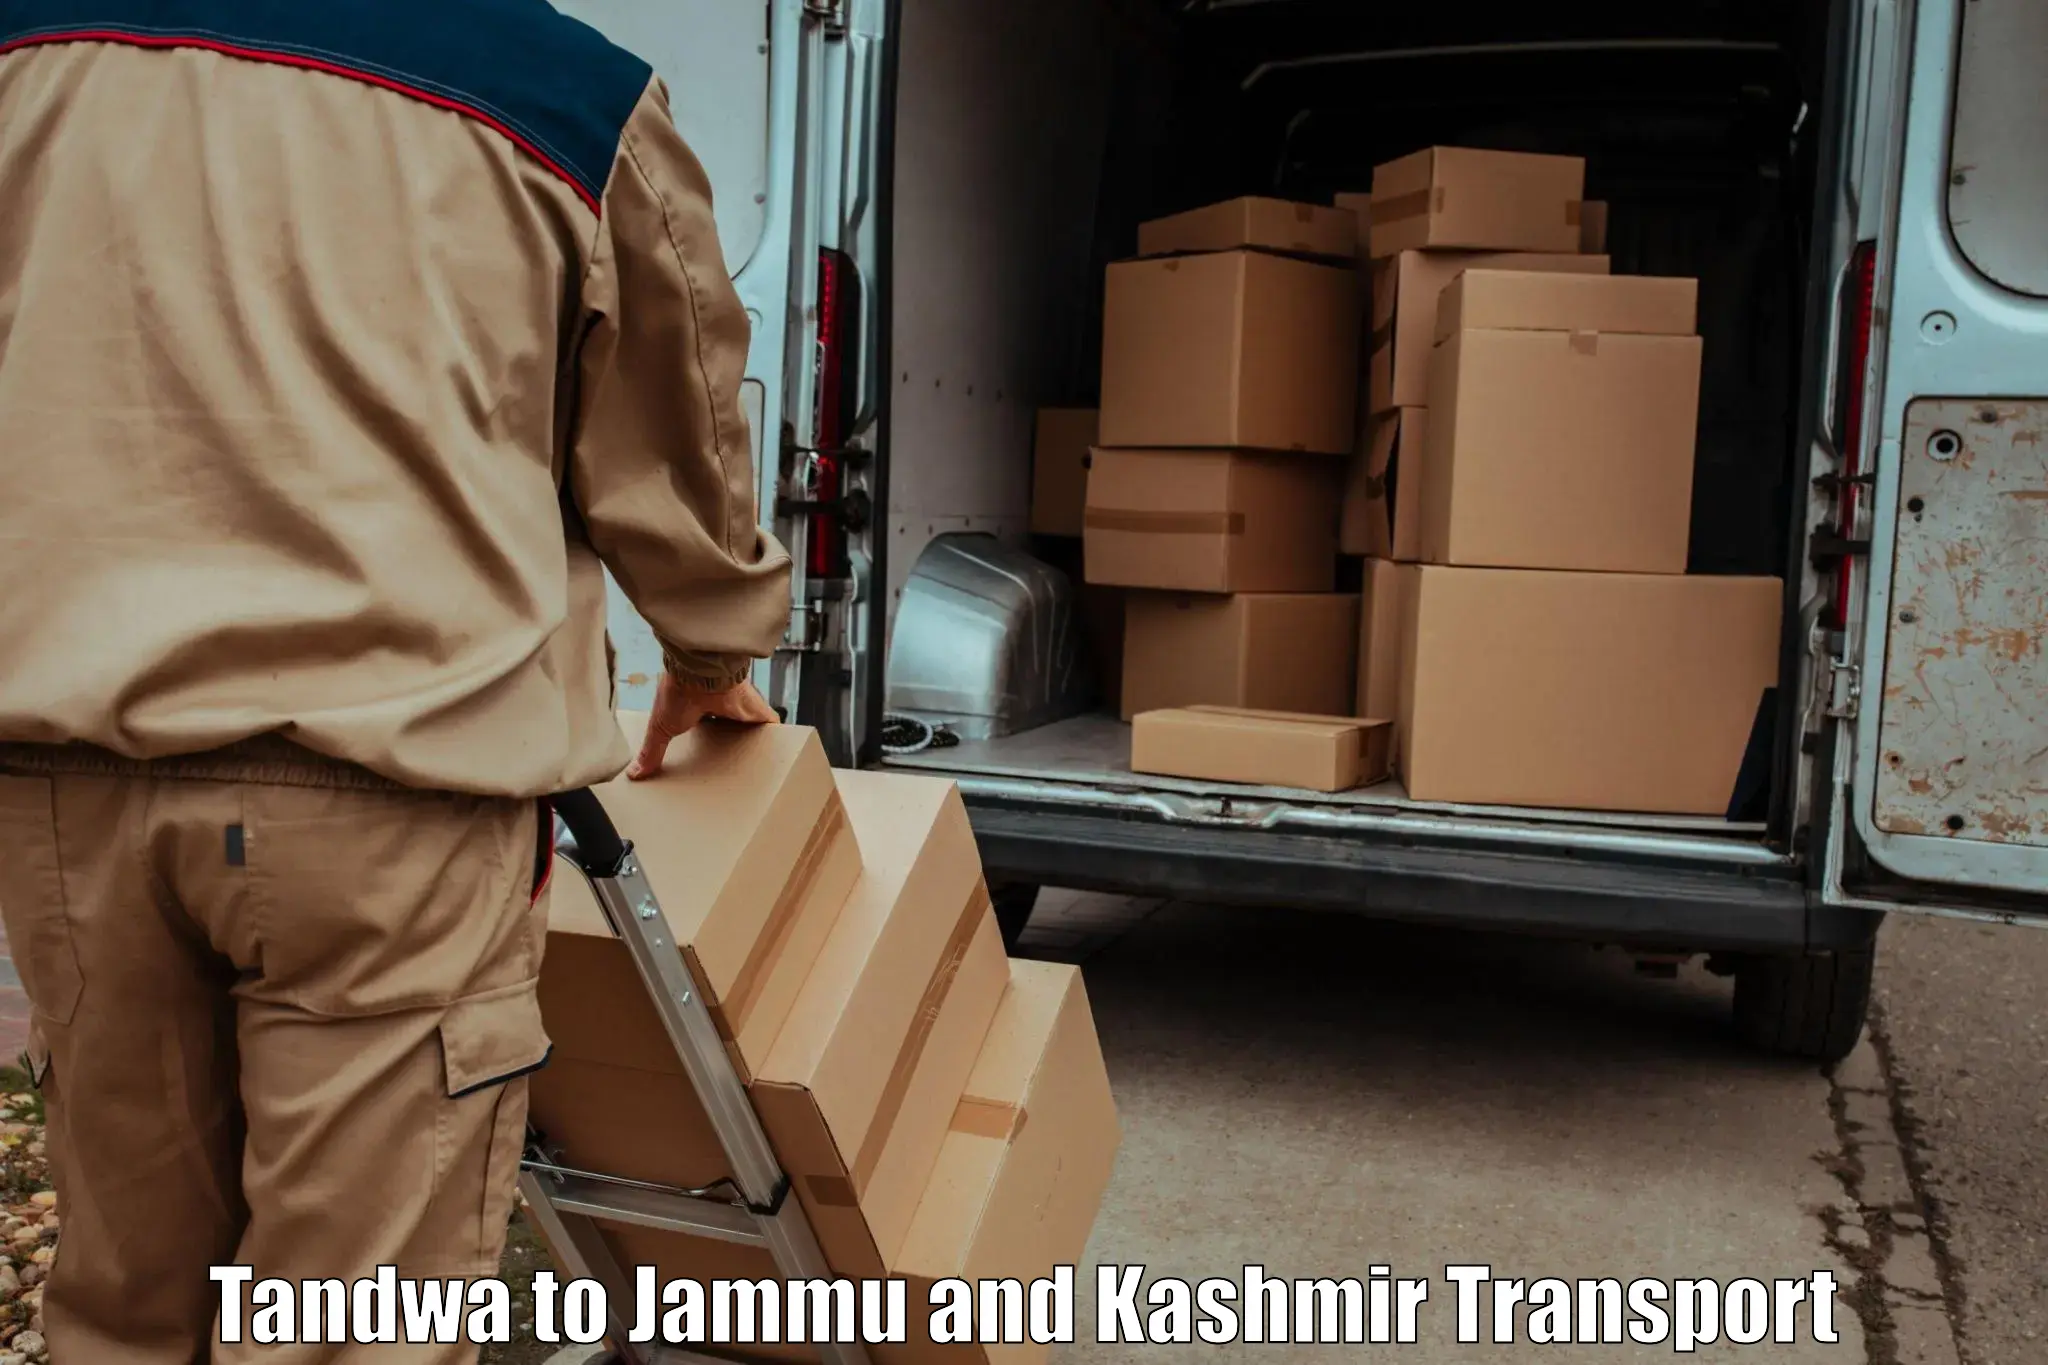 Cycle transportation service Tandwa to Jammu